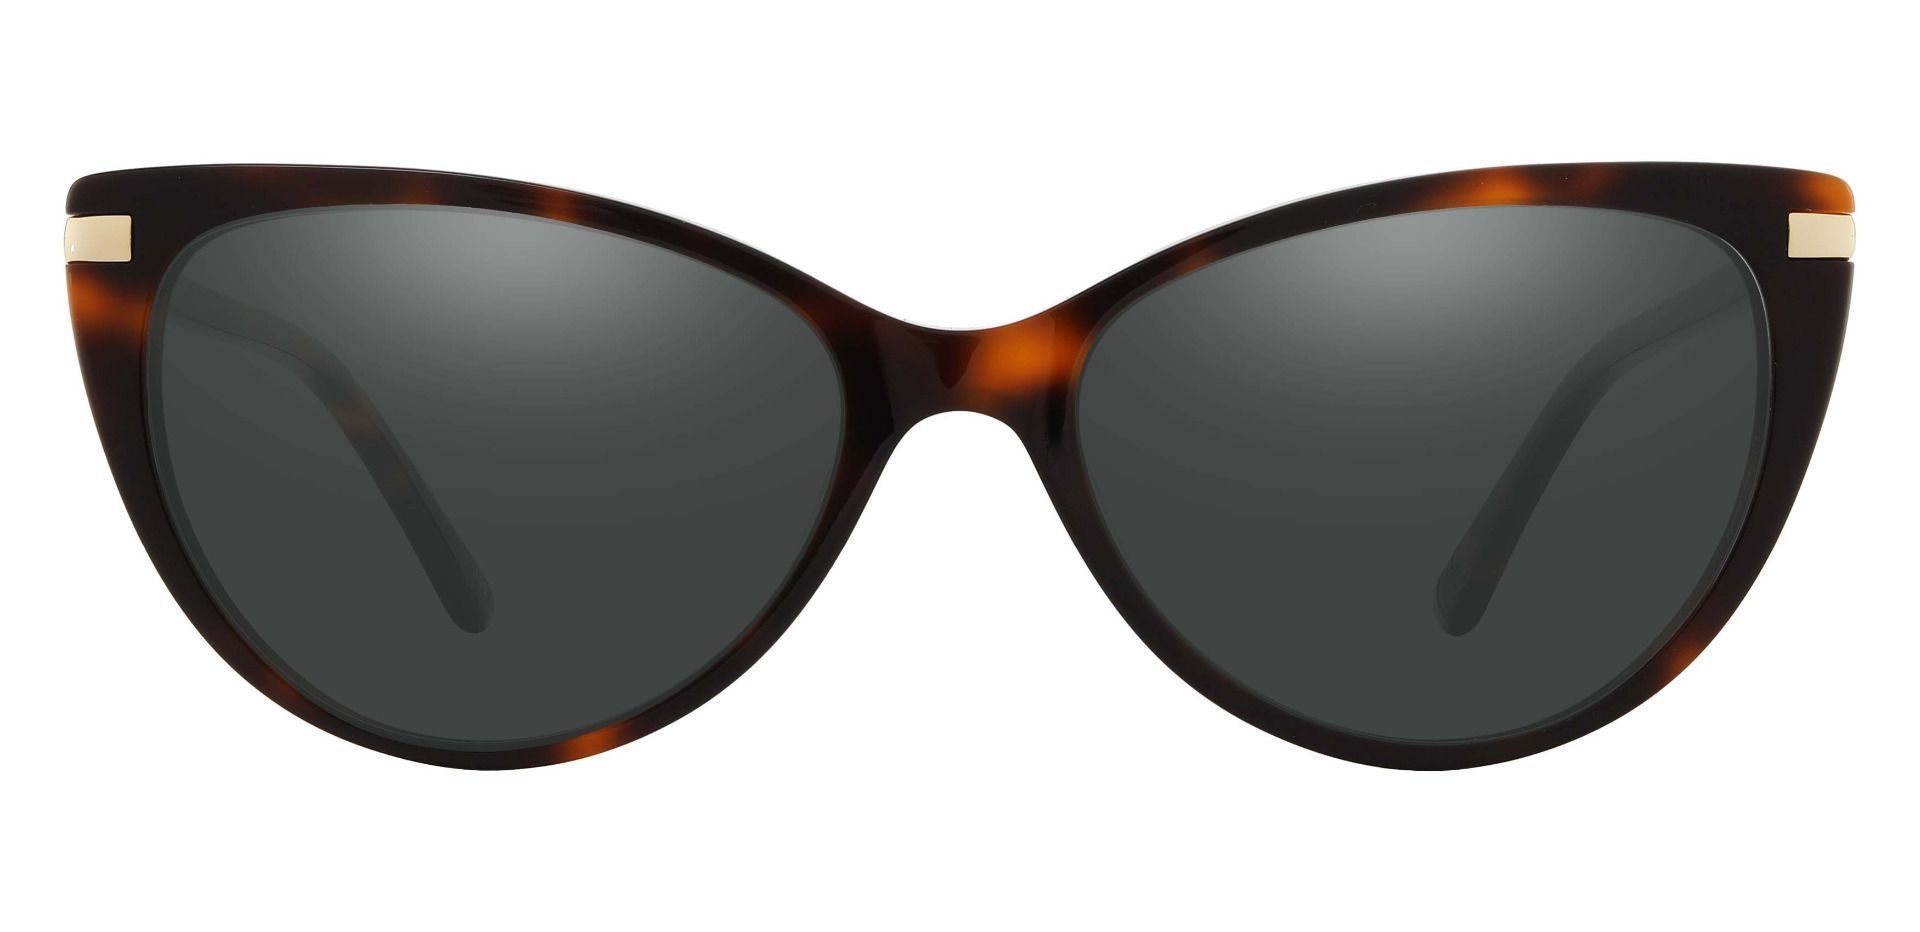 Starla Cat Eye Progressive Sunglasses - Tortoise Frame With Gray Lenses